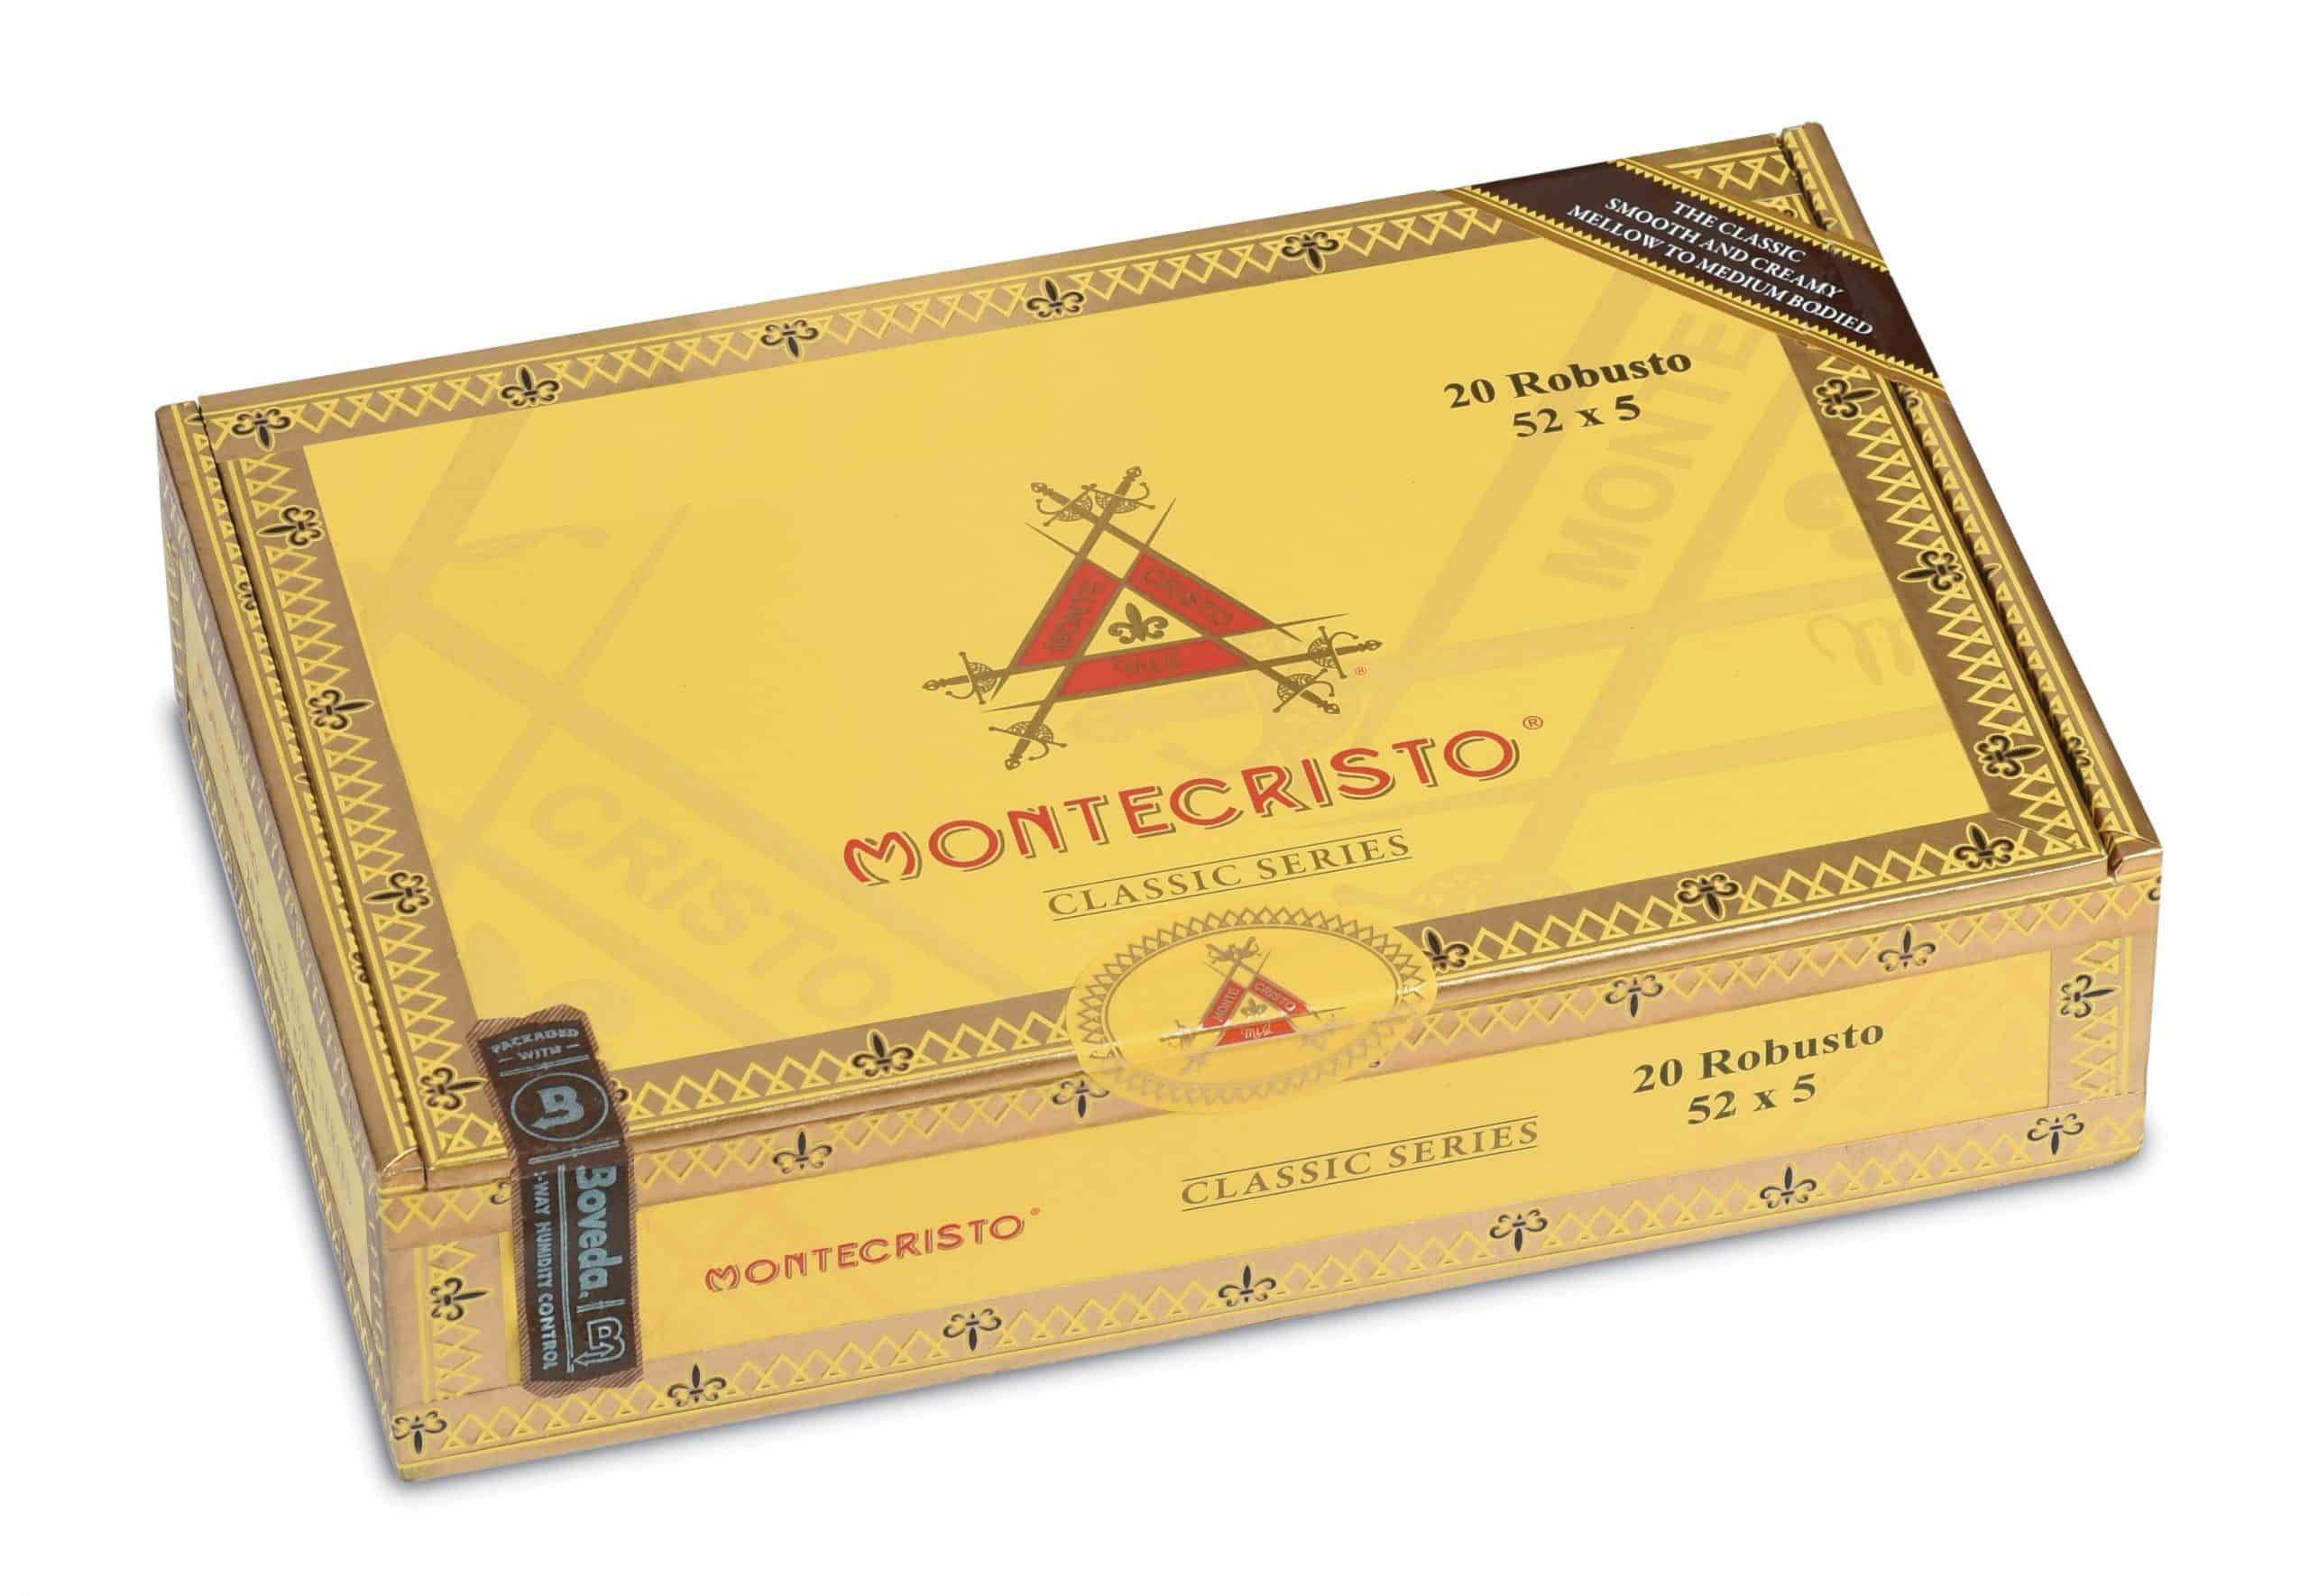 montecristo classic robusto box closed